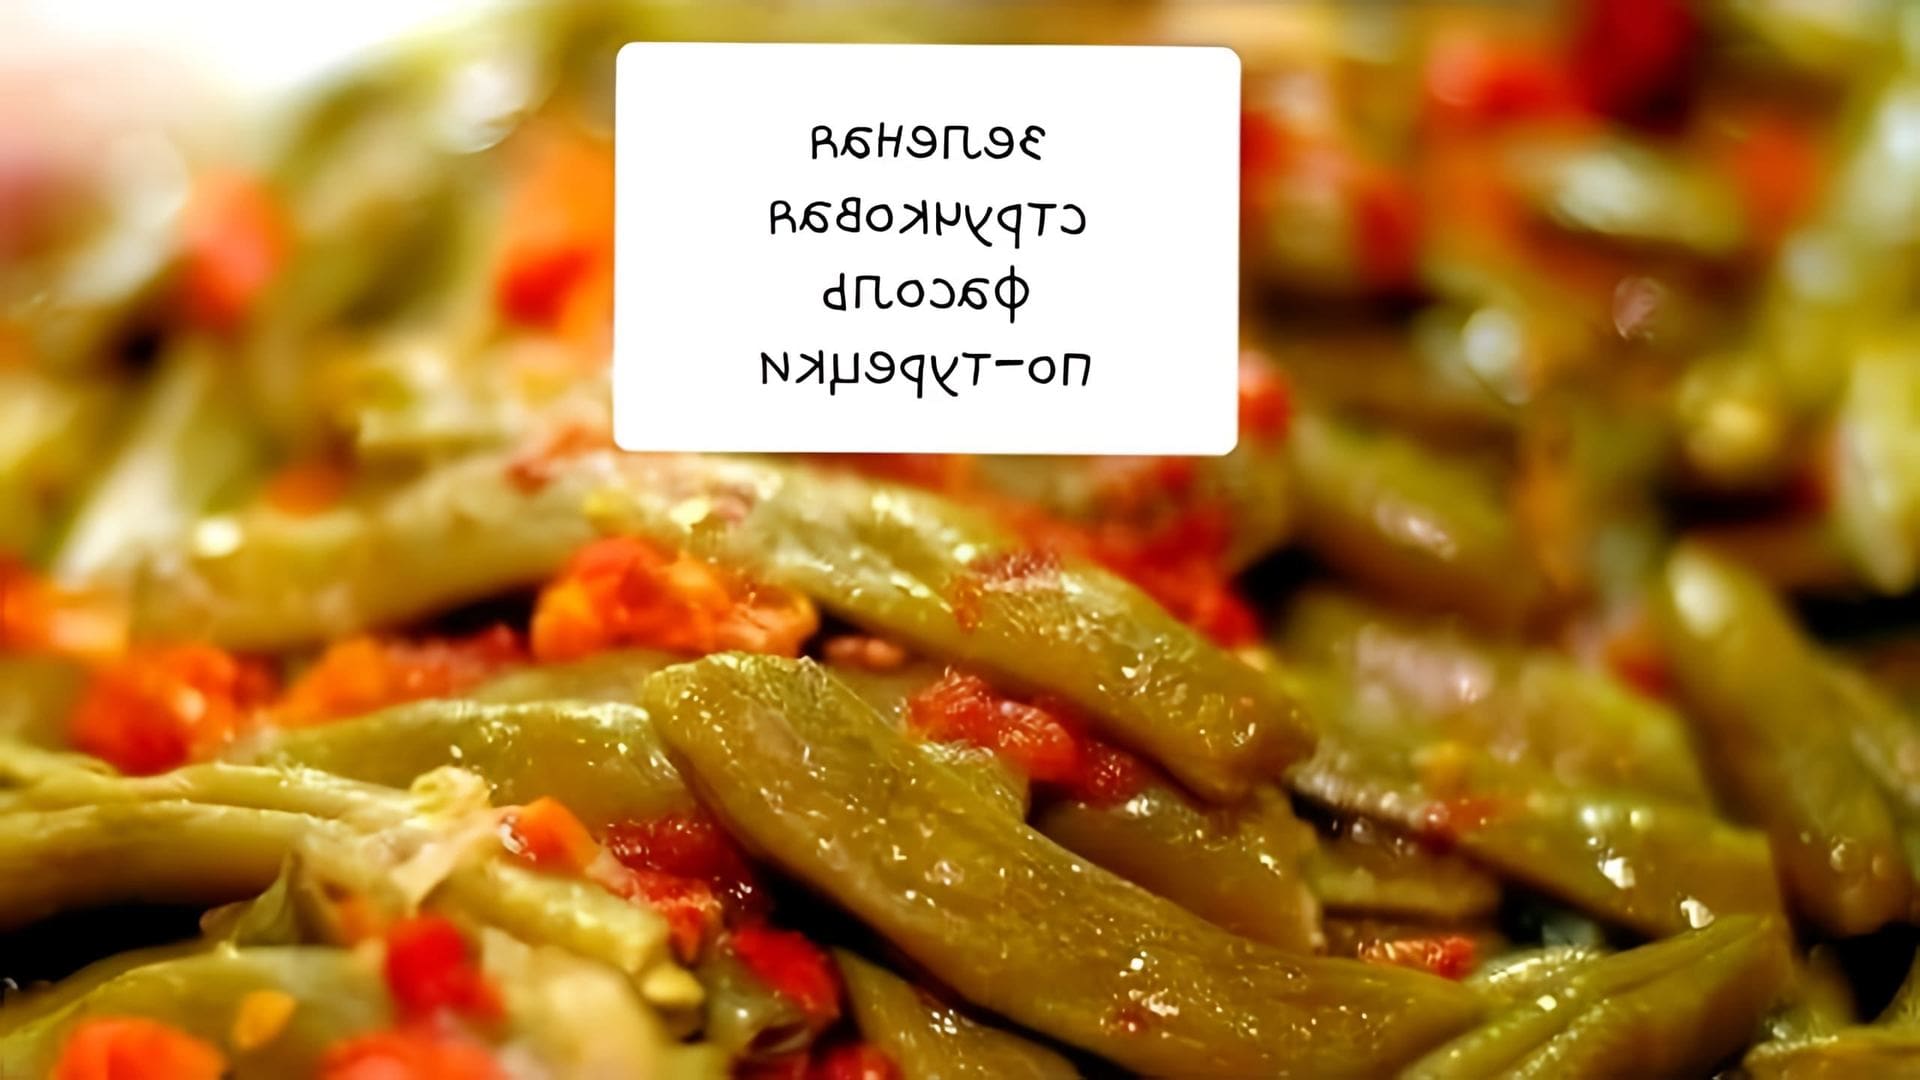 Зелёная стручковая фасоль по-турецки #турецкая еда #зеленая фасоль#турецкая кухня#